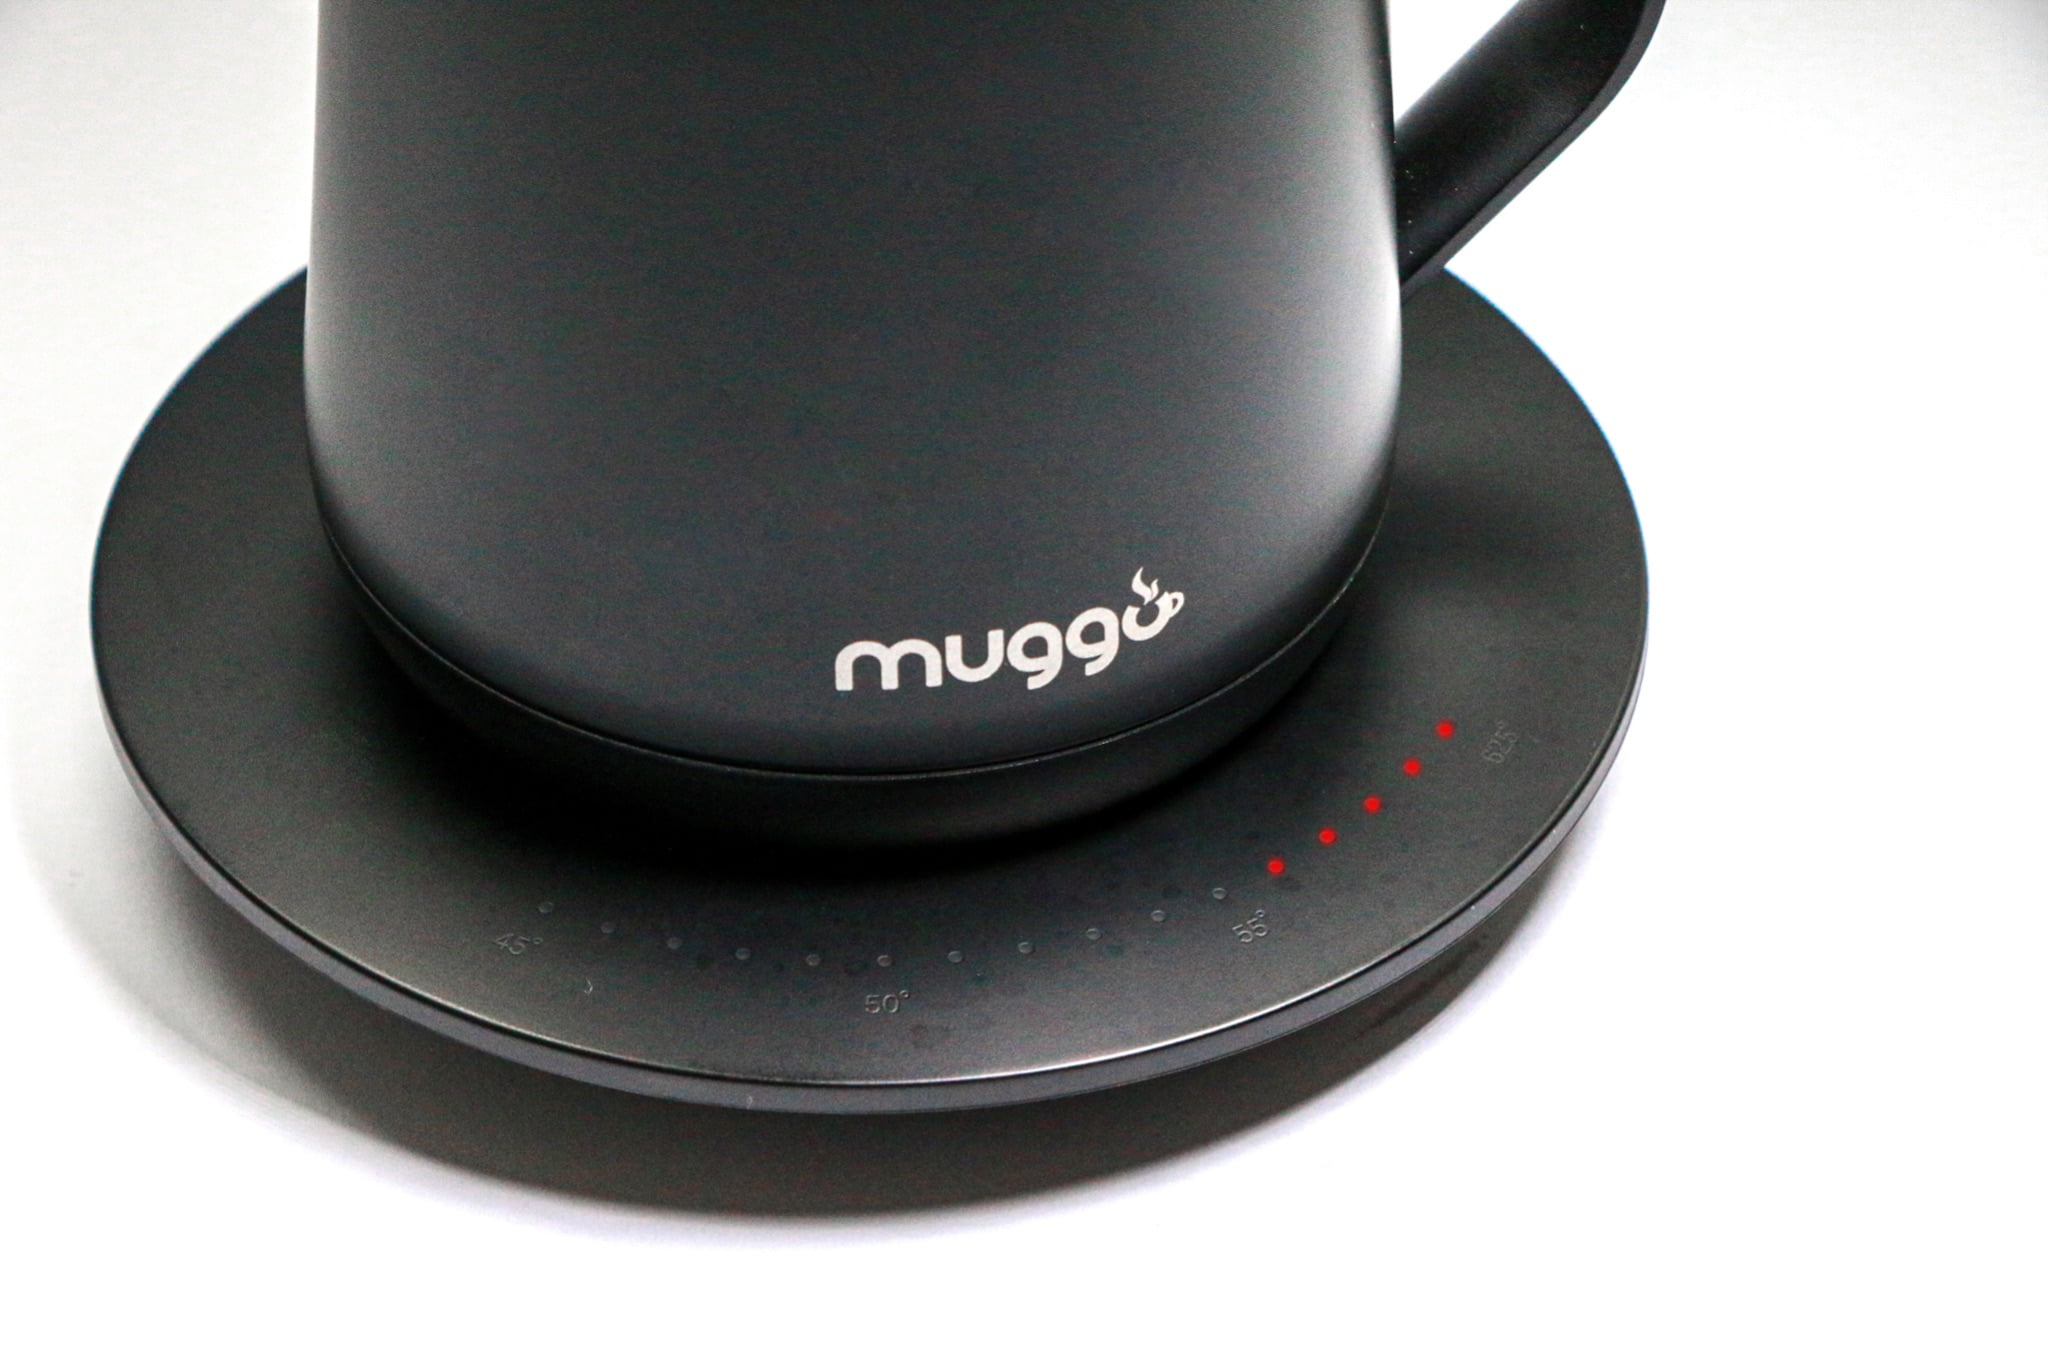 Muggo cup close up photo